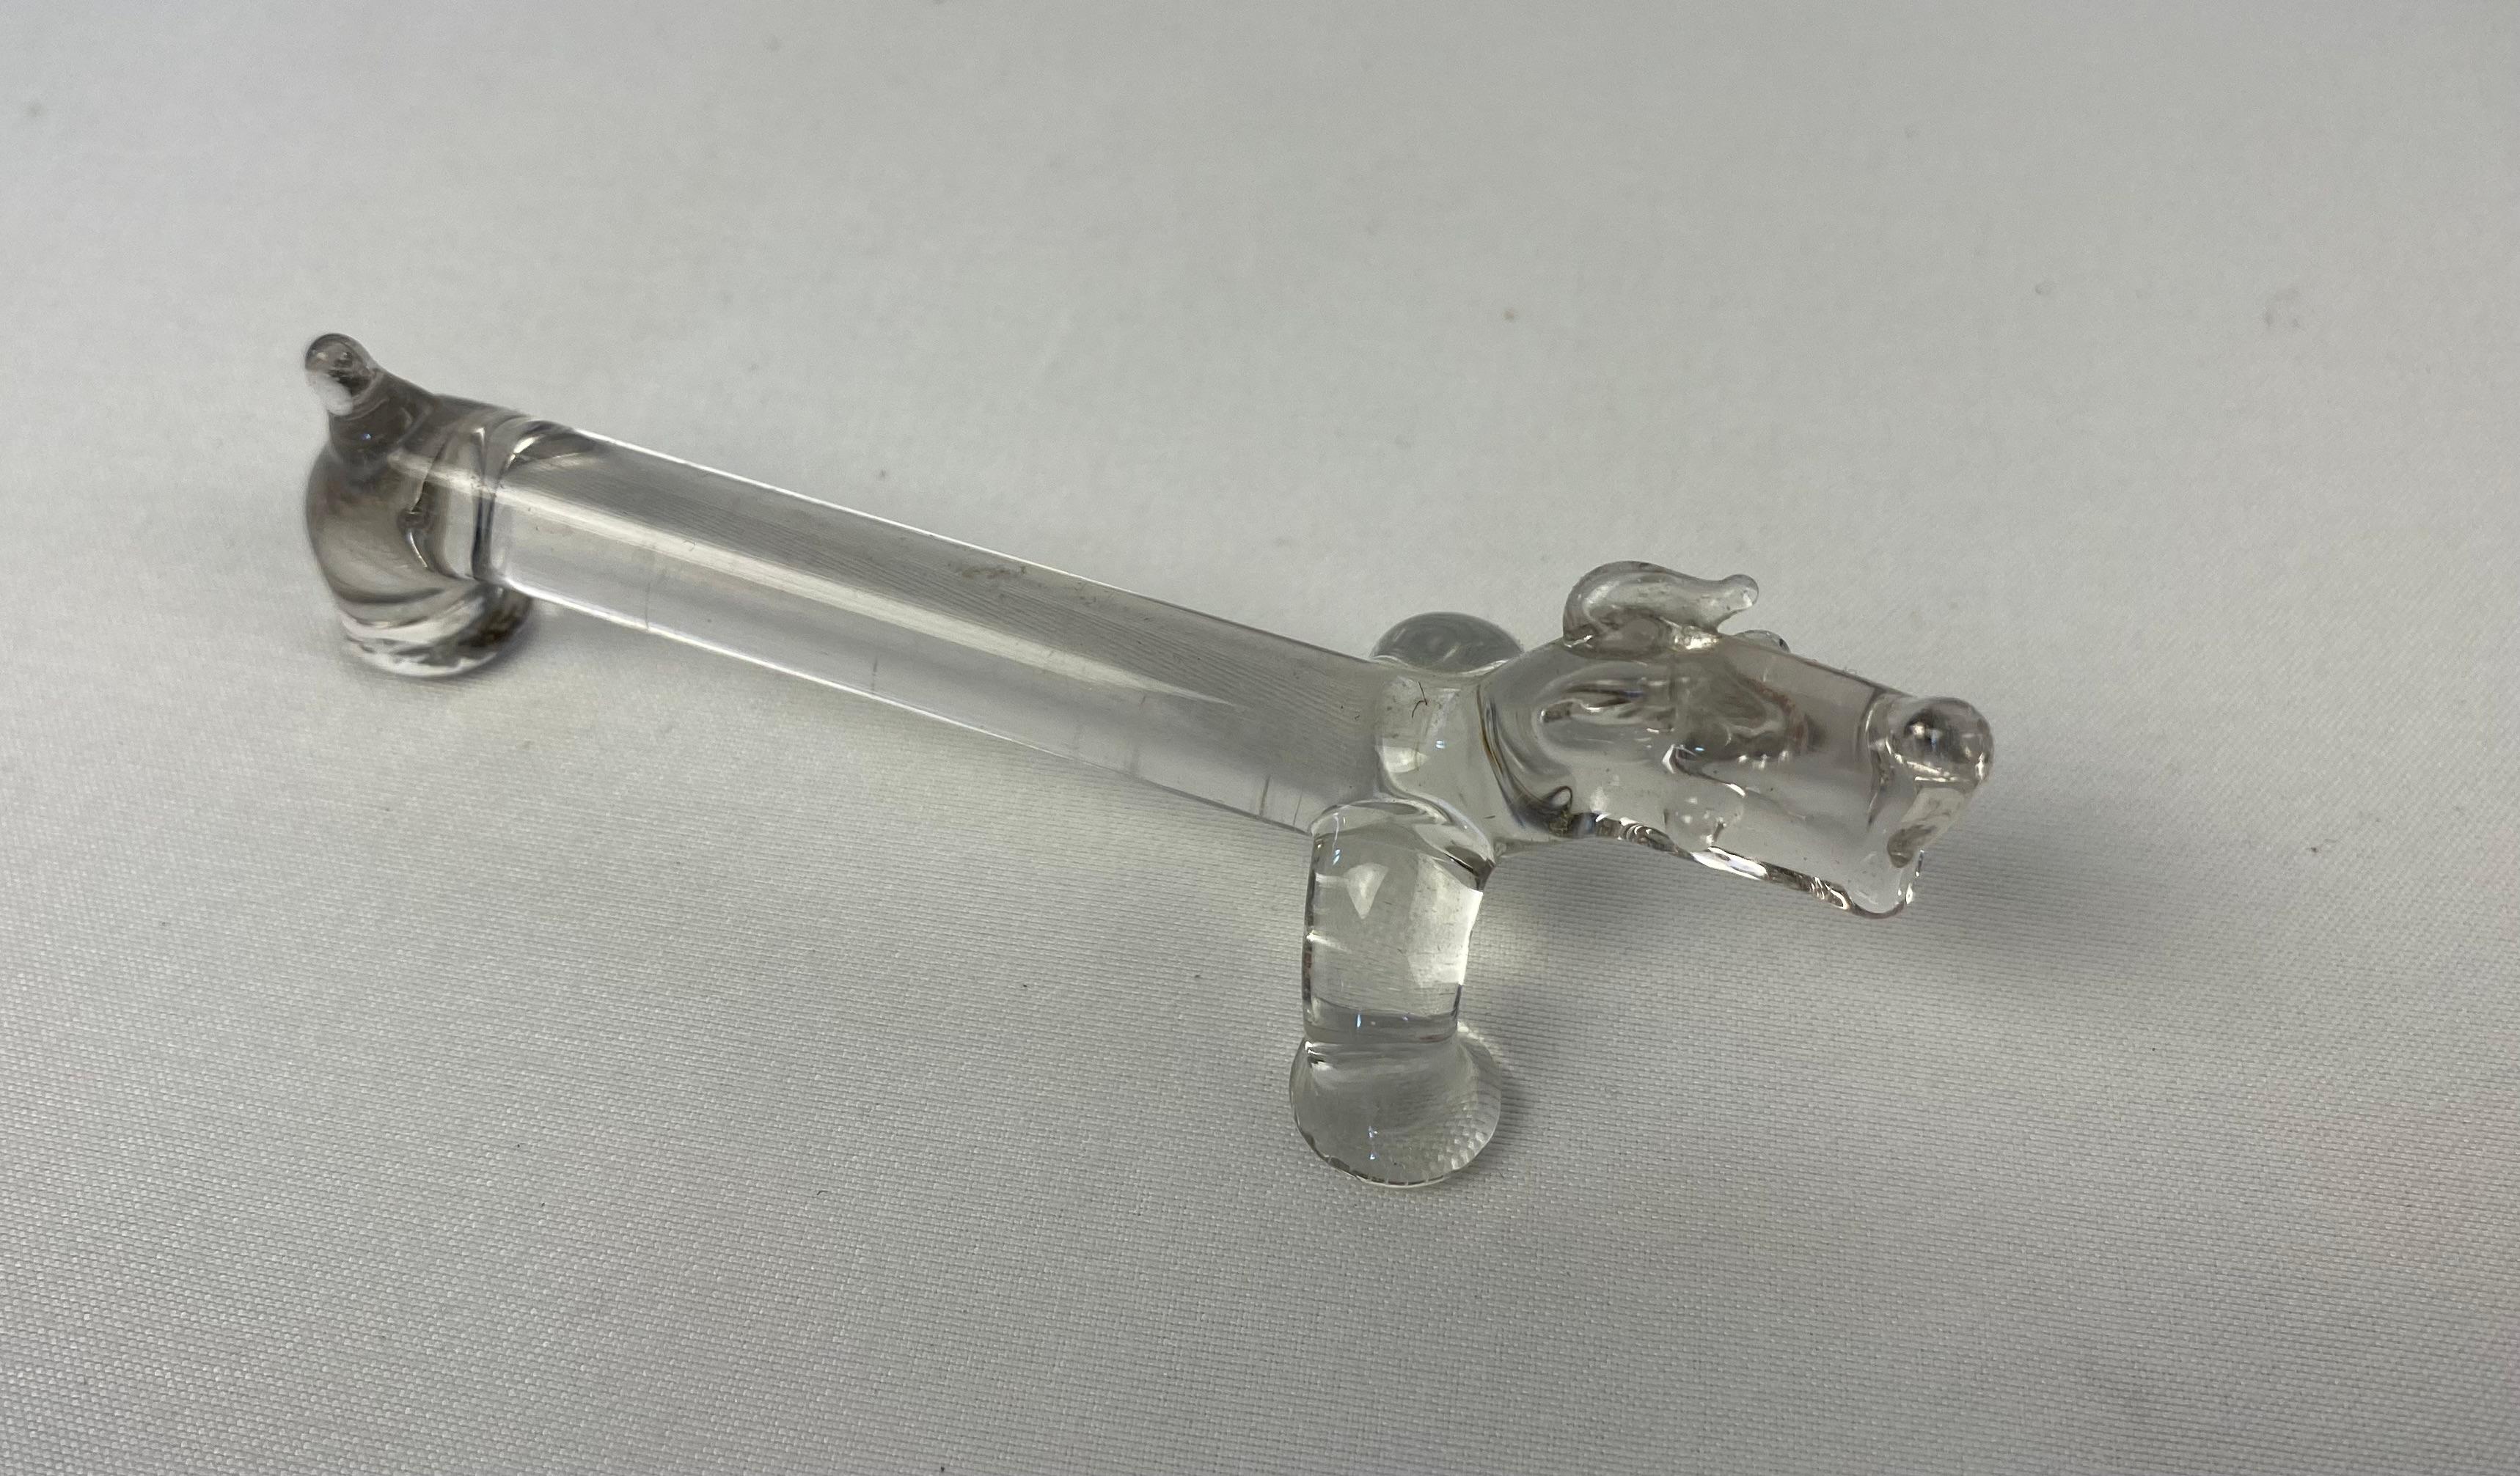 Un charmant ensemble de 10 repose-couteaux en verre moulé en forme de chien Basset Hound. Fabriqué en France, vers 1960-70.

Cet ensemble fantaisiste de 10 porte-couteaux en verre moulé en forme de Basset Hound français ornera votre table et ravira